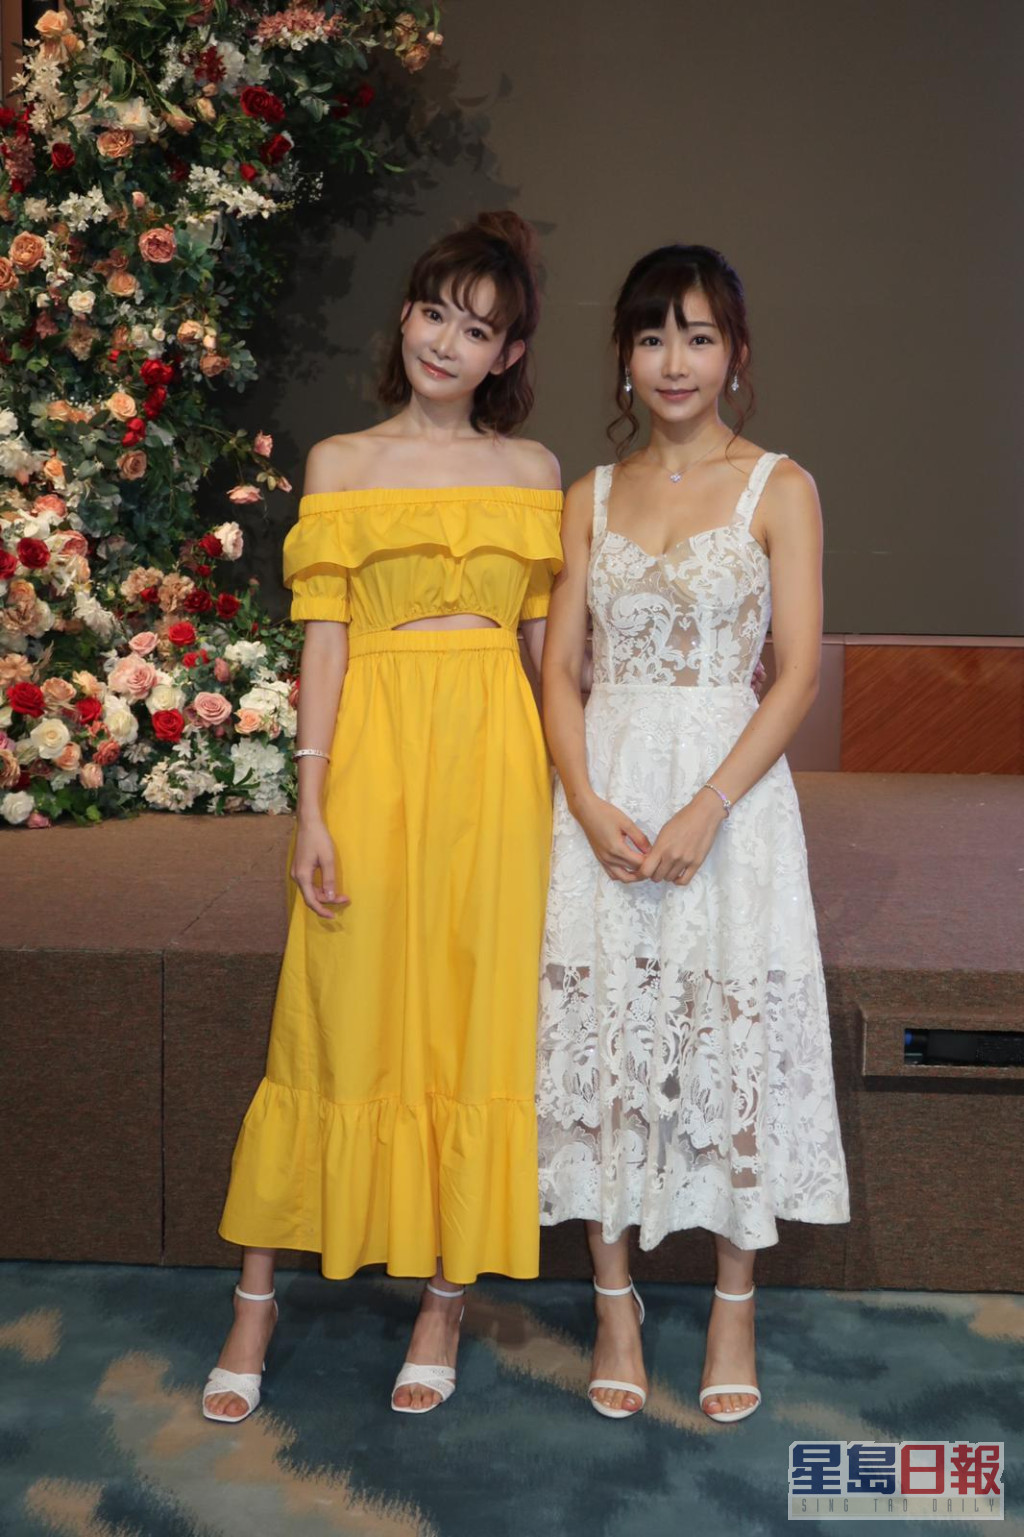 简淑儿和赵慧珊一齐出席婚礼活动。